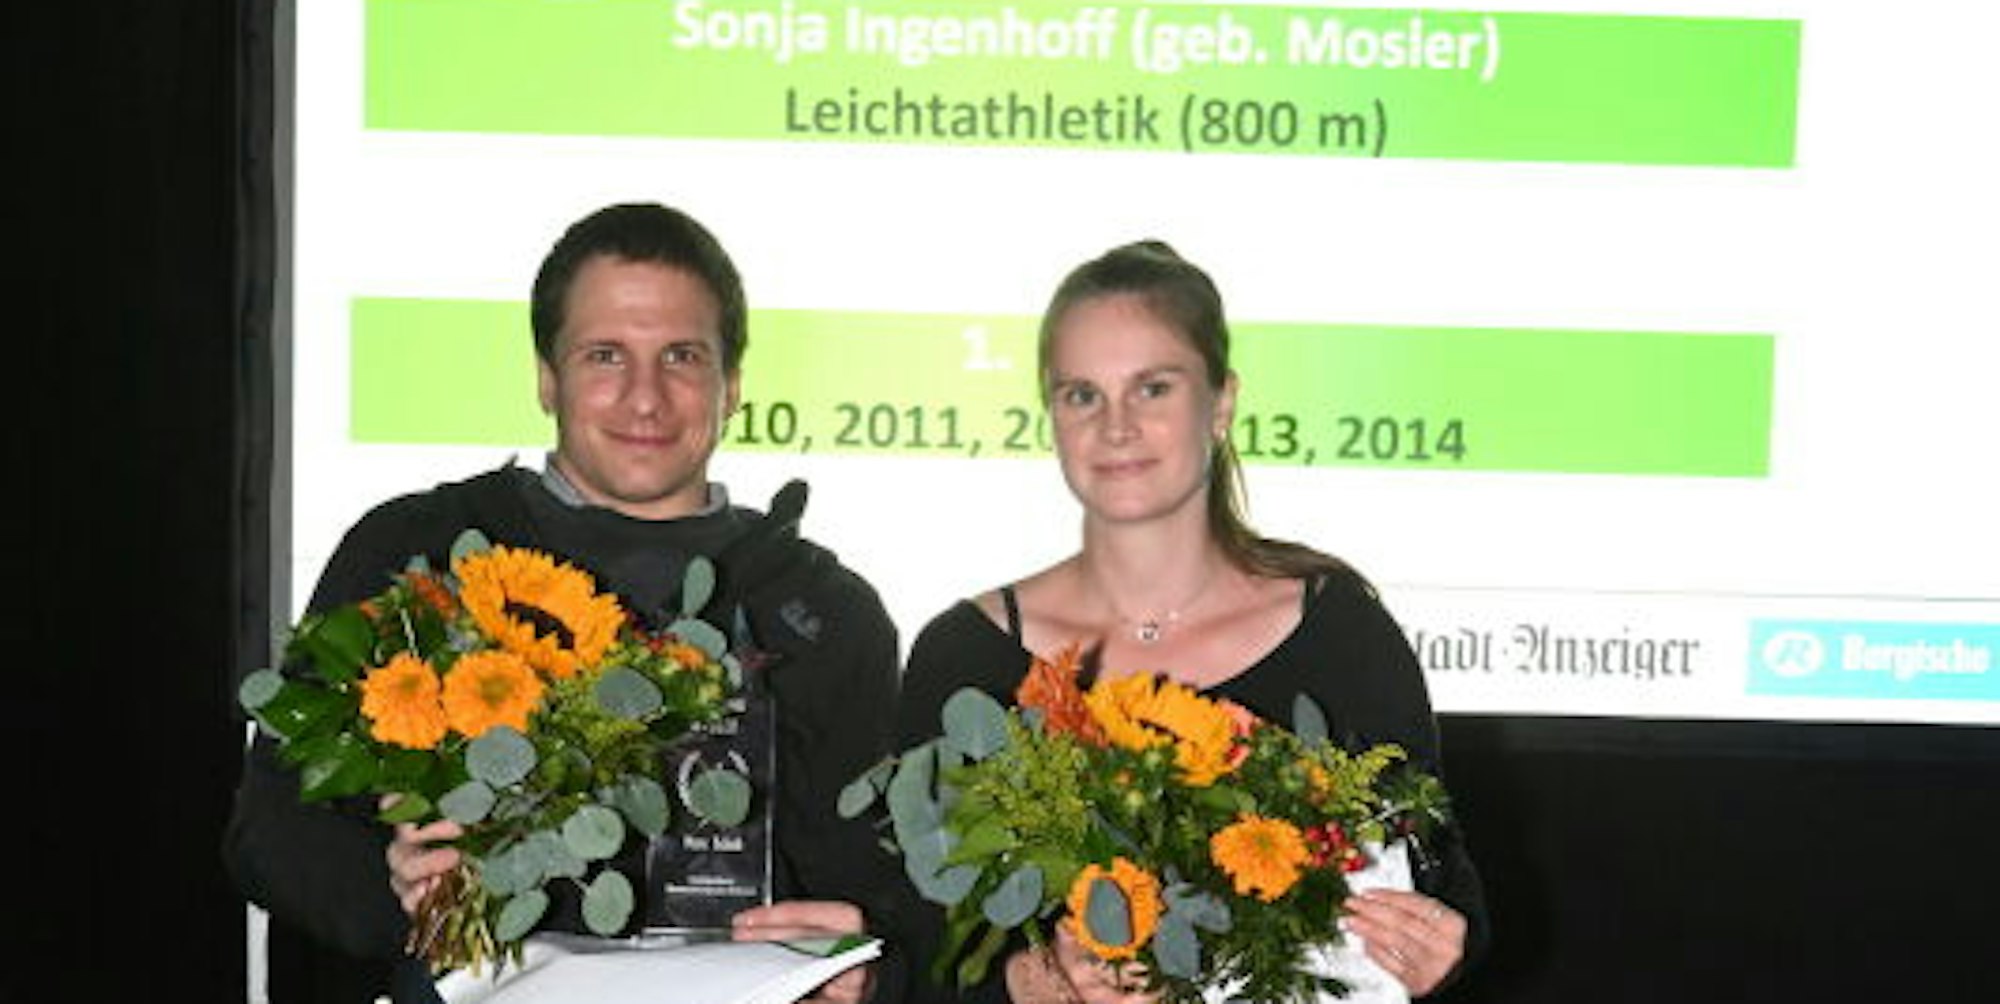 Als „Sportler des Jahrzehnts“ sind Dr. Marc Schuh und Sonja Ingenhoff geehrt worden.